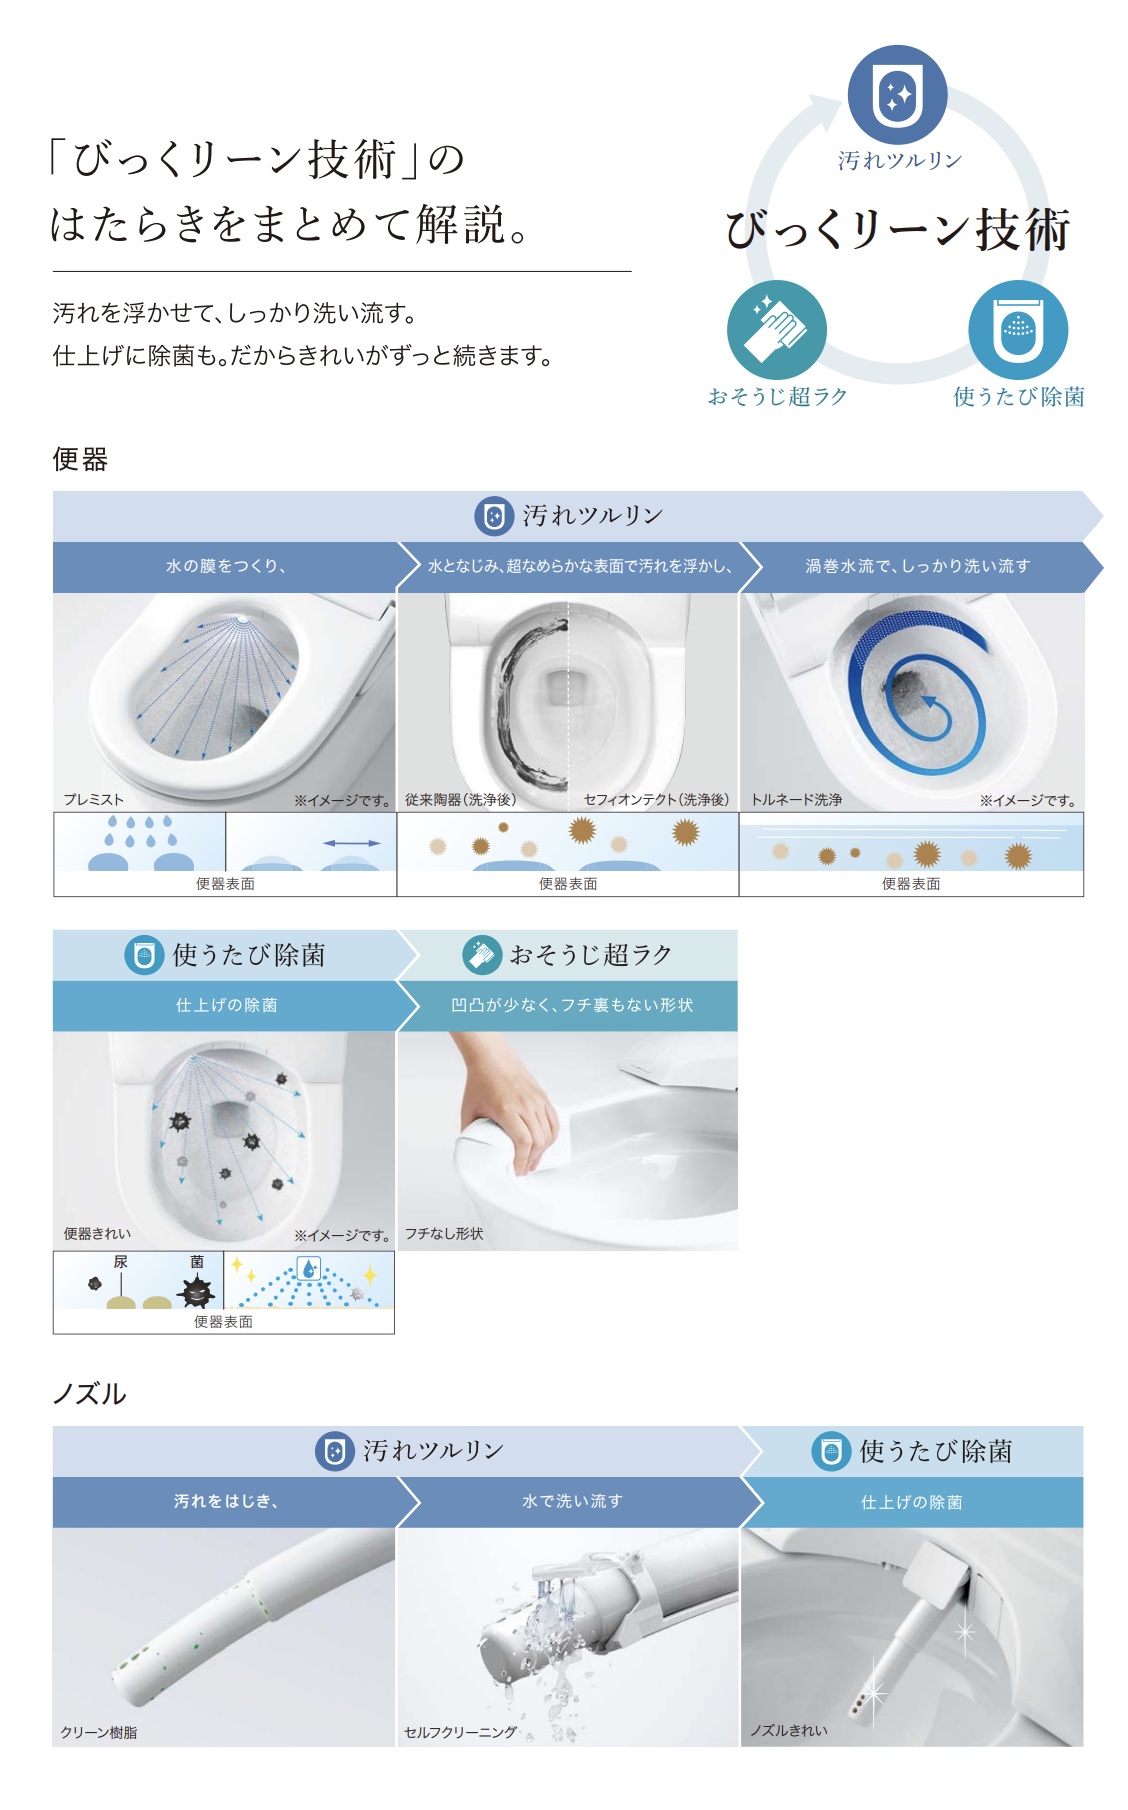 CES9720Fのトイレきれいの技術